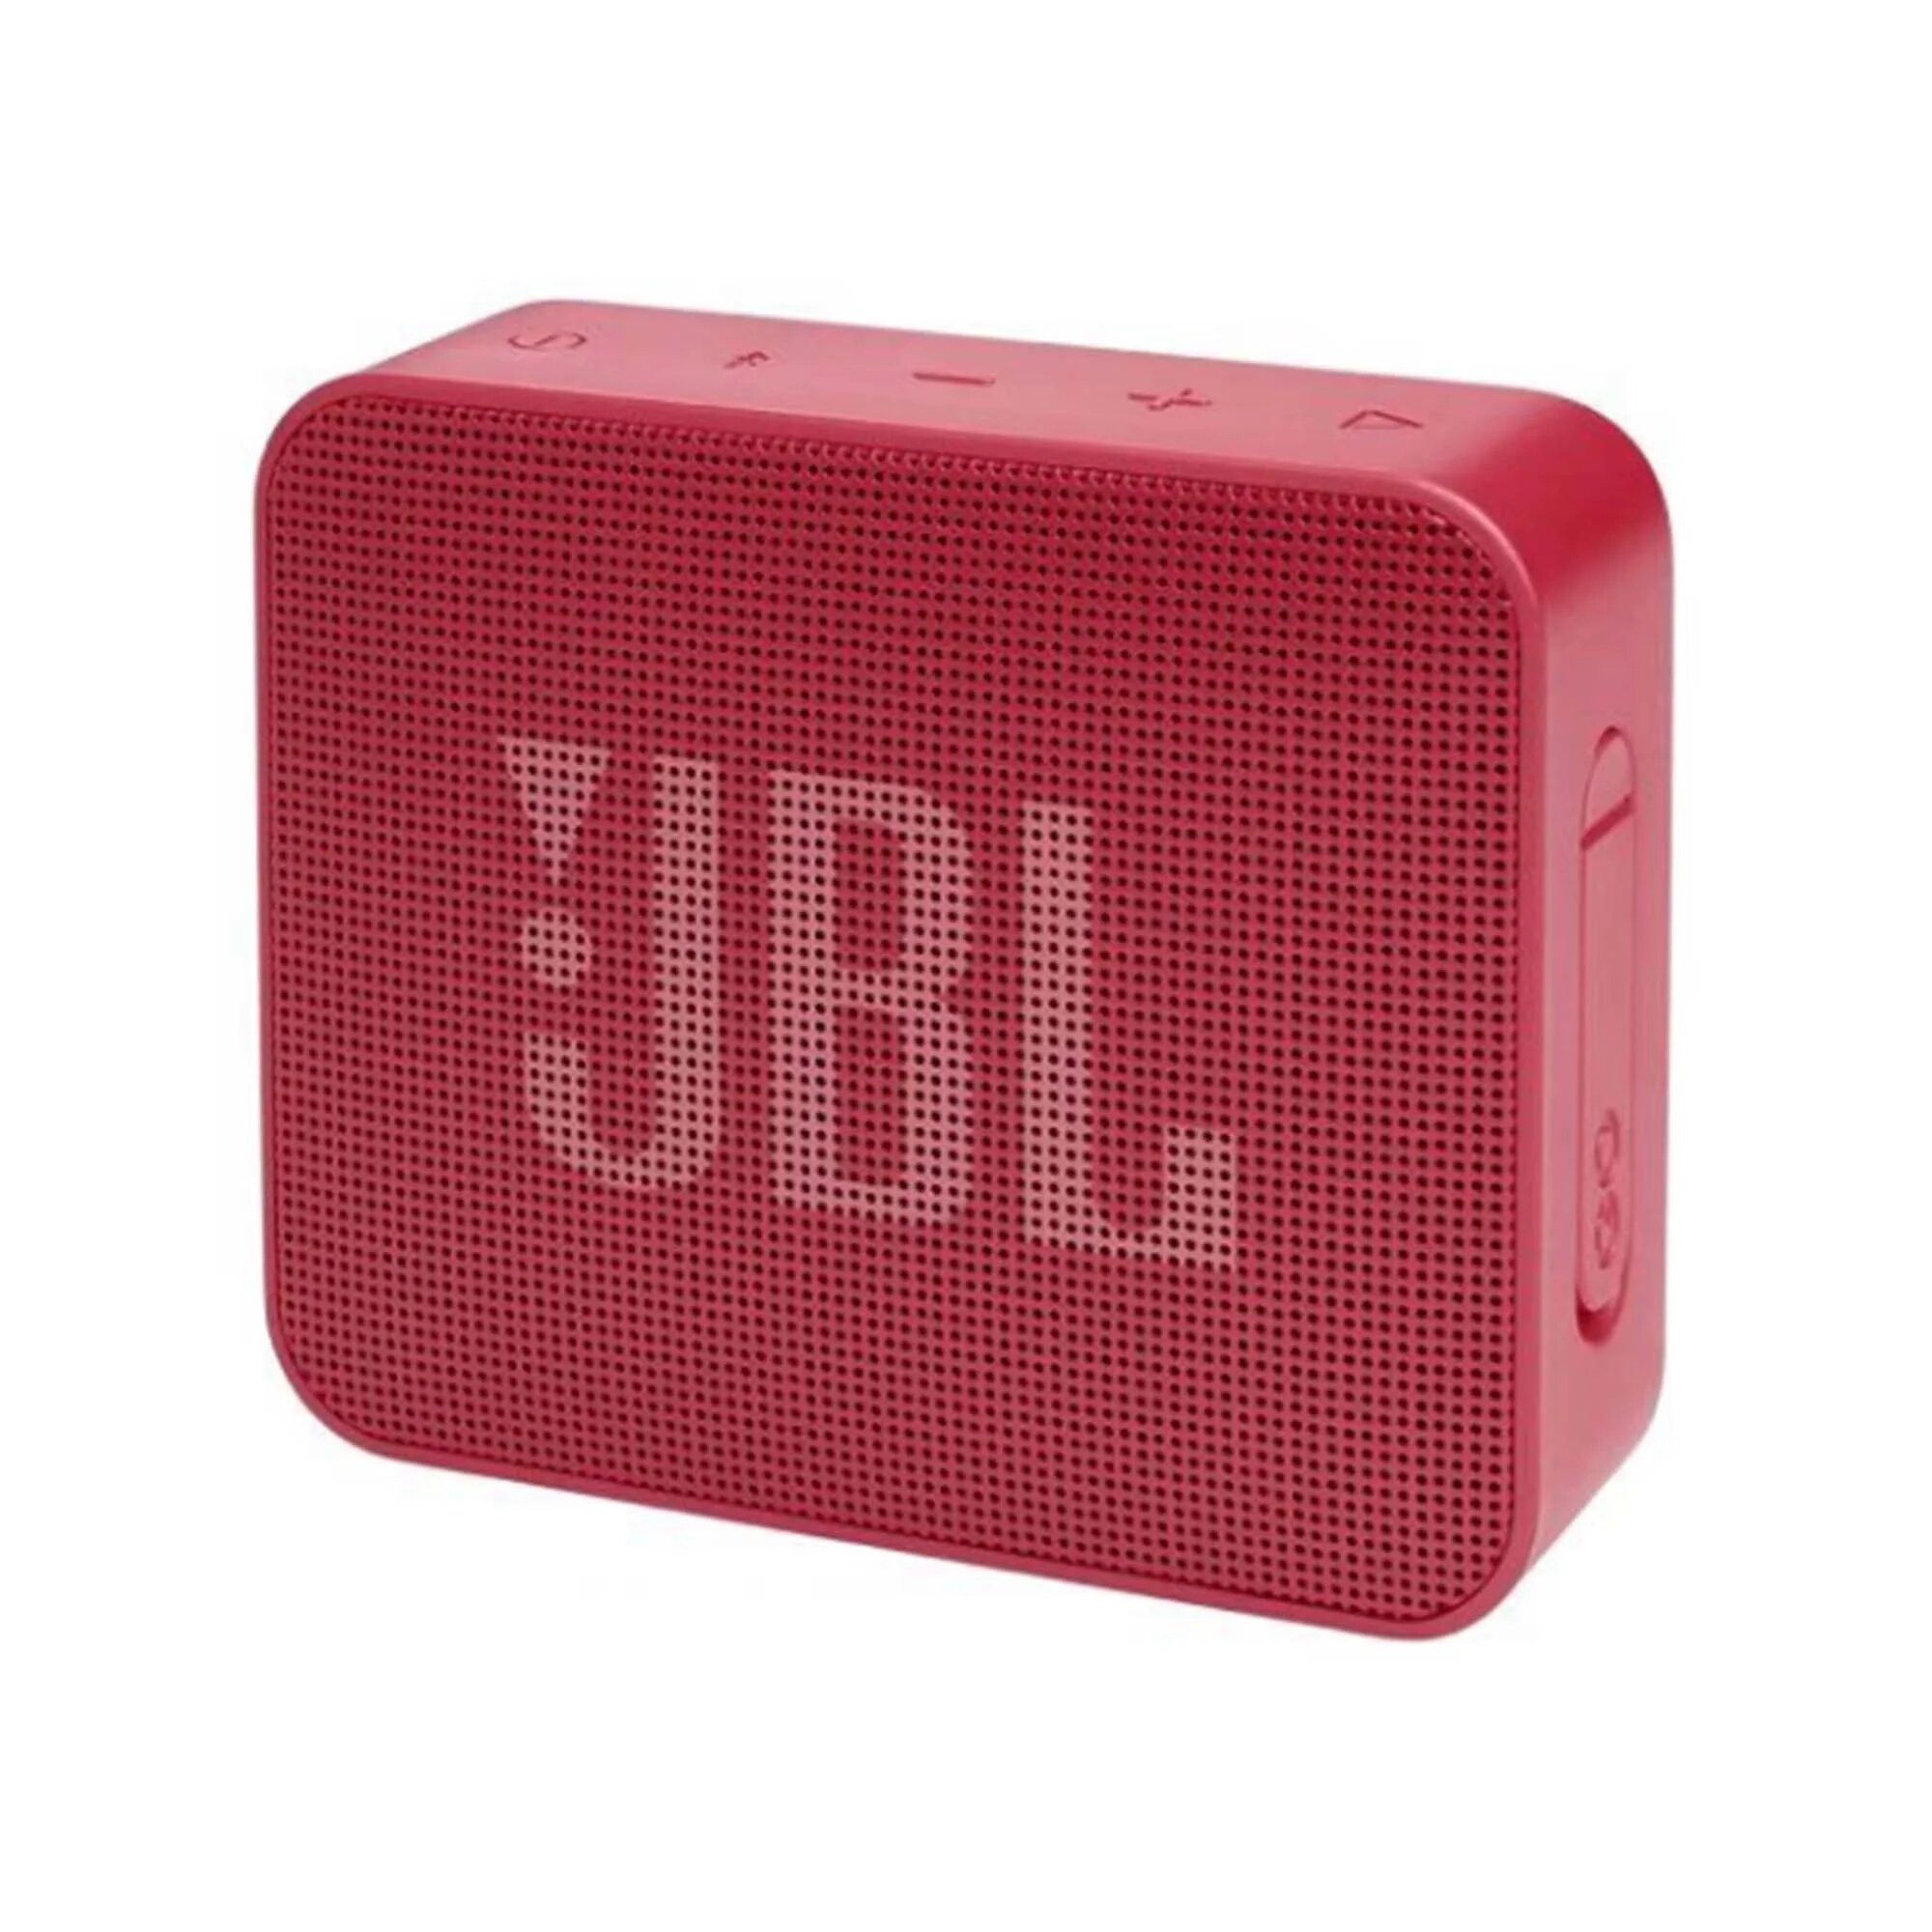 Портативная акустика JBL Go Essential Red портативная колонка jbl go 3